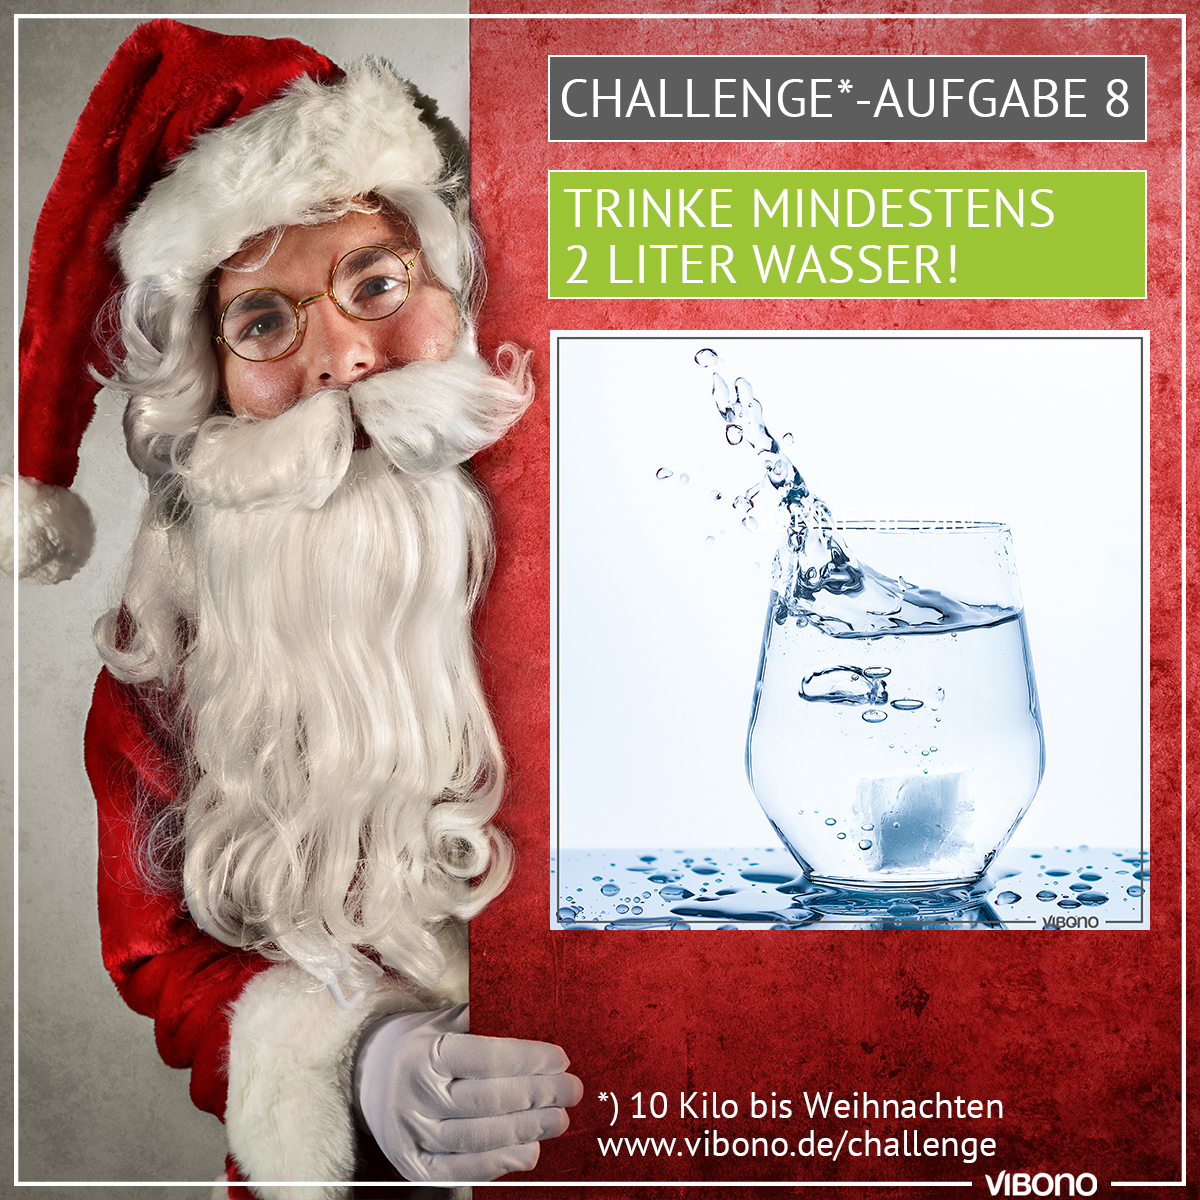 Challenge-Aufgabe 8: Wasser trinken